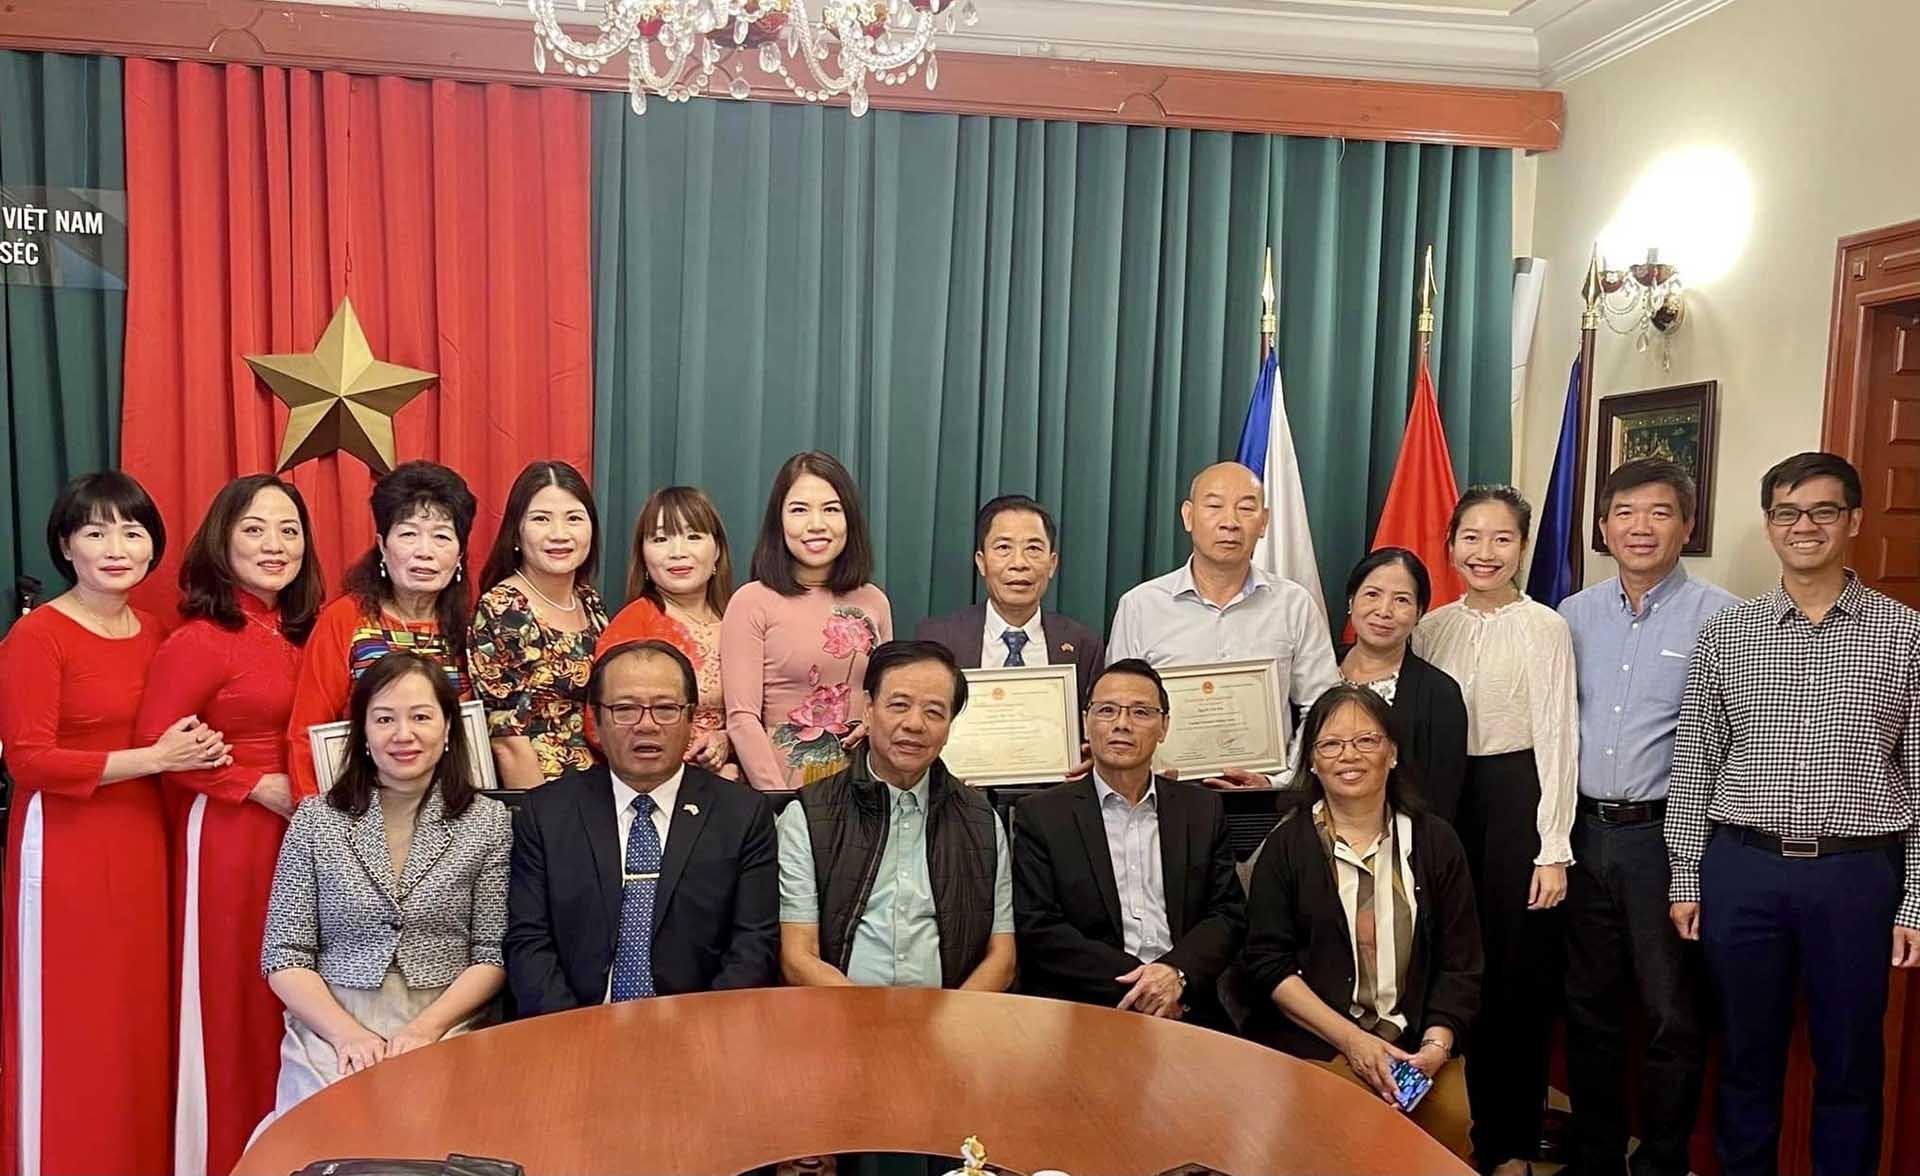 Đại sứ quán Việt Nam trao chứng chỉ cho các giáo viên người Việt tại Czech đã tốt nghiệp Khoá tập huấn tiếng Việt 2021 trực tuyến do Ủy ban người Việt ở nước ngoài tổ chức.